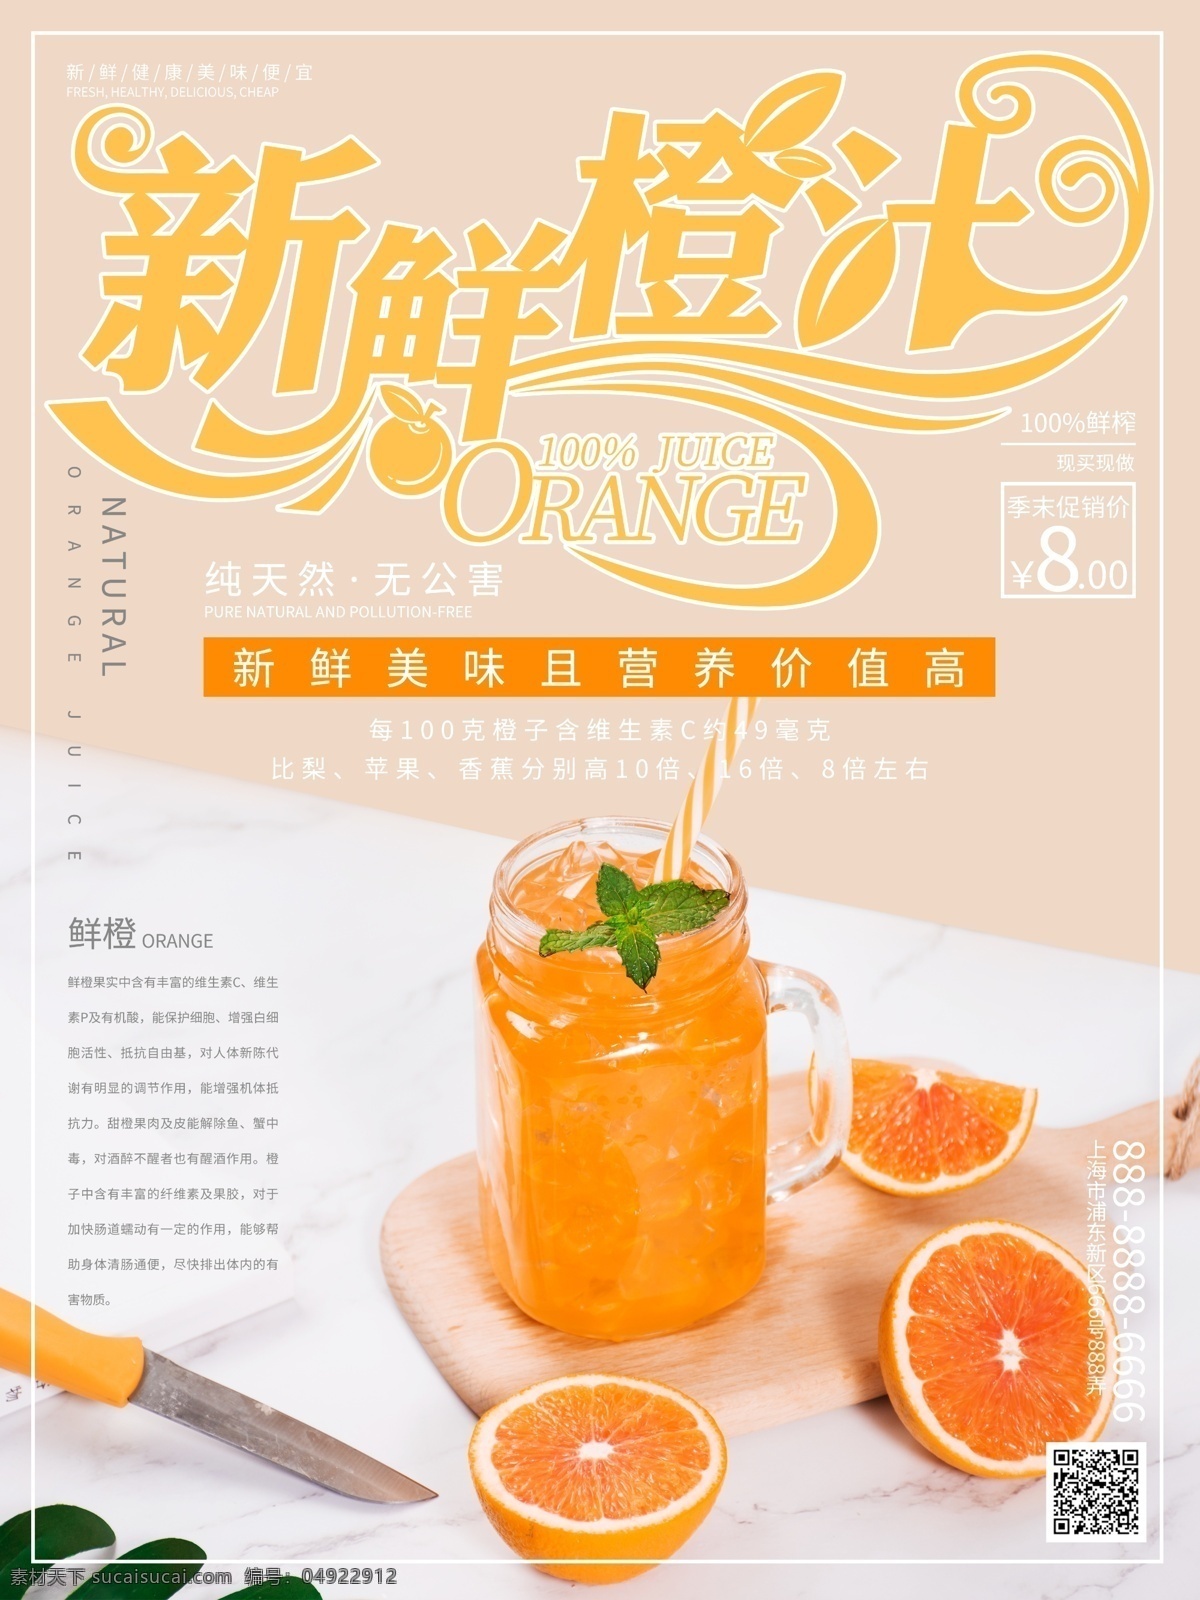 简约 创意 新鲜 橙汁 促销 宣传海报 创意字 橙子 水果 果汁 健康 饮料 美食 宣传单 海报 营养 橙 美食海报 橙汁海报